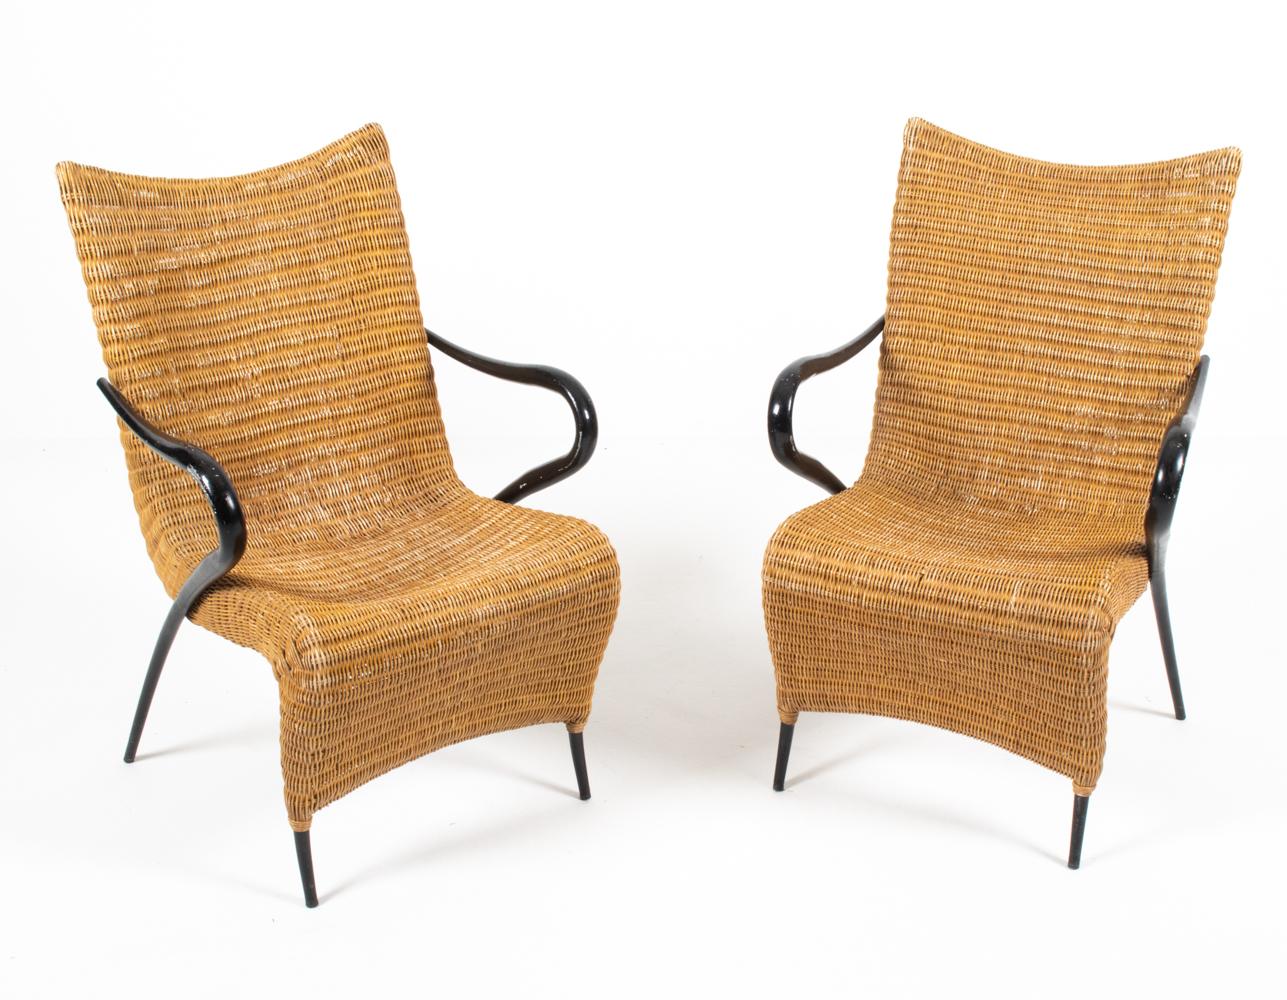 Une paire rare et inhabituelle de fauteuils modernes danois en rotin aux formes sculpturales avec des accoudoirs élégamment inclinés en finition peinture noire. Conçu par Soren Lund pour Soren Lund Mobler, seconde moitié du XXe siècle. Ces chaises